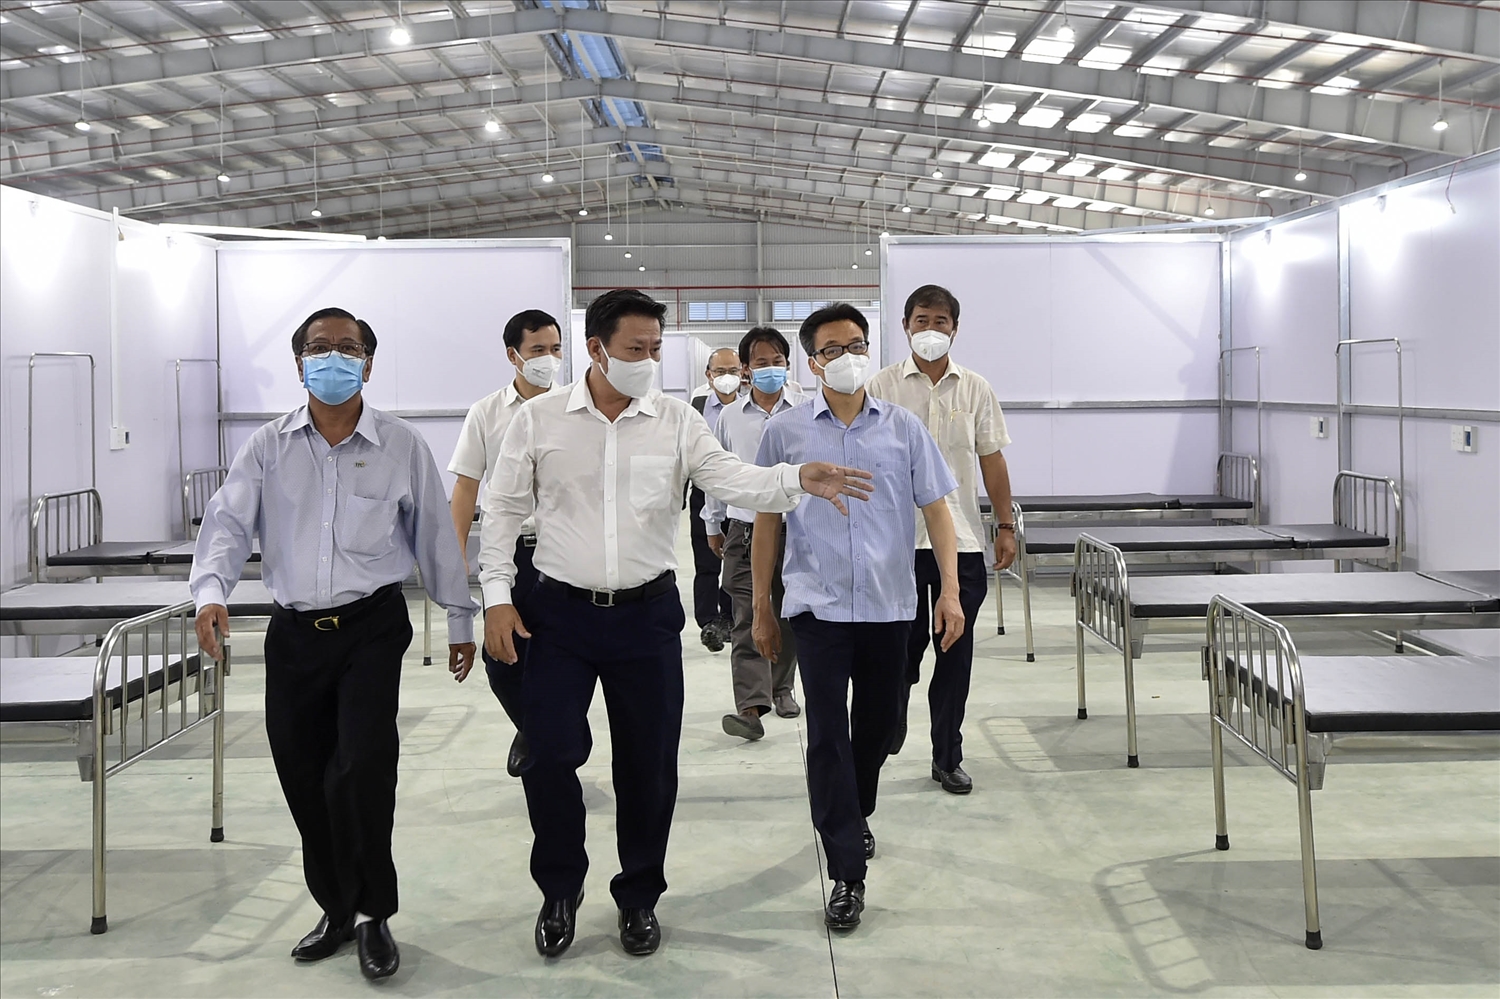 Phó Thủ tướng Vũ Đức Đam kiểm tra công tác chuẩn bị Bệnh viện Dã chiến số 1 (tại Khu công nghiệp Thành Thành Công, thị xã Trảng Bàng, tỉnh Tây Ninh). Ảnh: VGP/Đình Nam